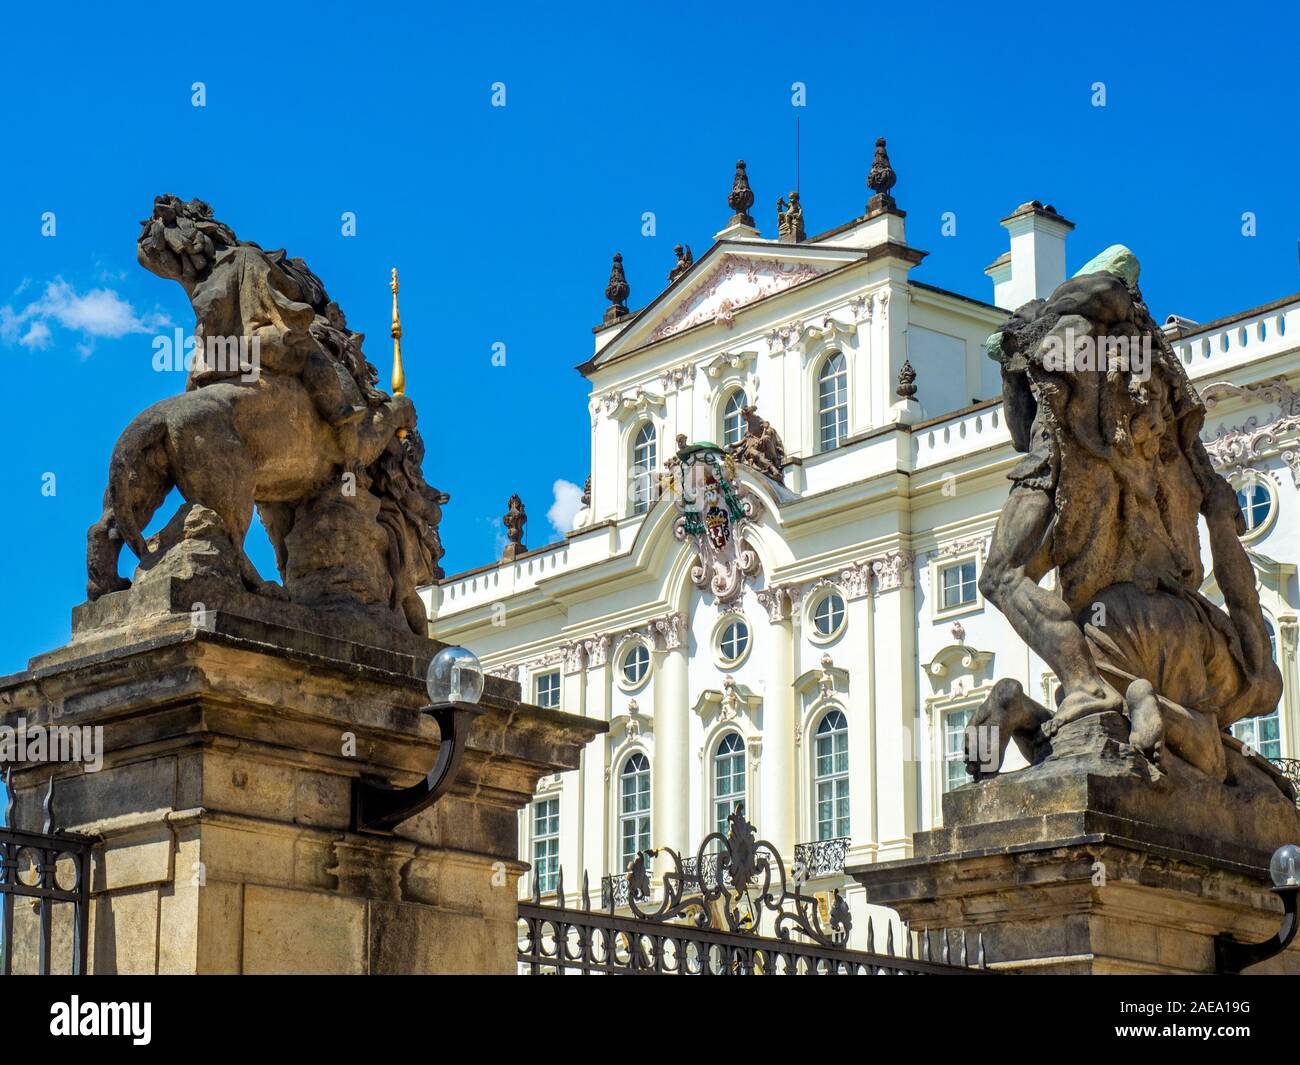 Erzbischöflicher Palast und das Wrestling Titans oder Giants' Gate Eingang zum ersten Hof des Prager Schlosskomplexes Prag Tschechische Republik. Stockfoto